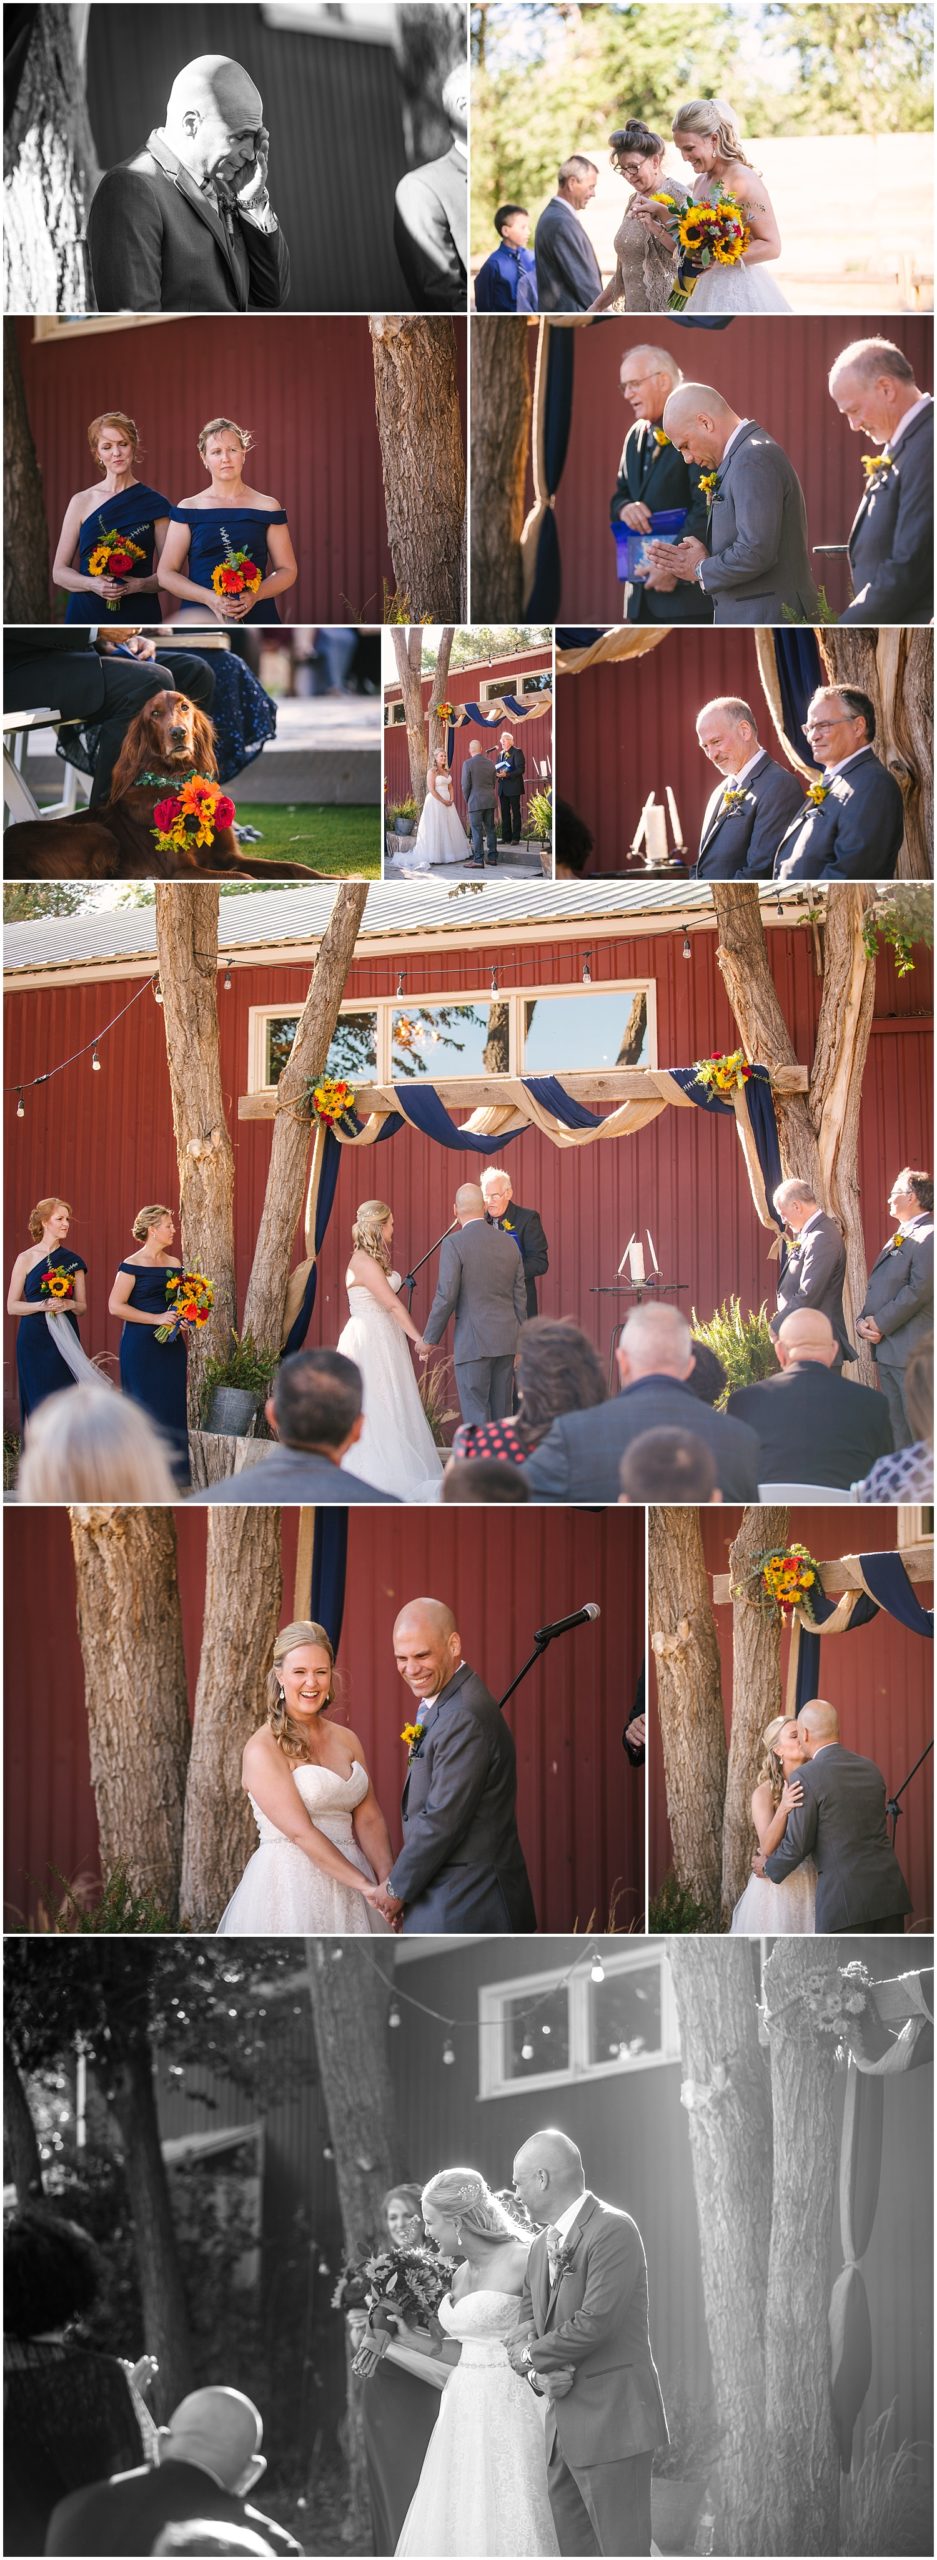 Outdoor wedding ceremony at Rustic Lace Barn in Colorado Springs